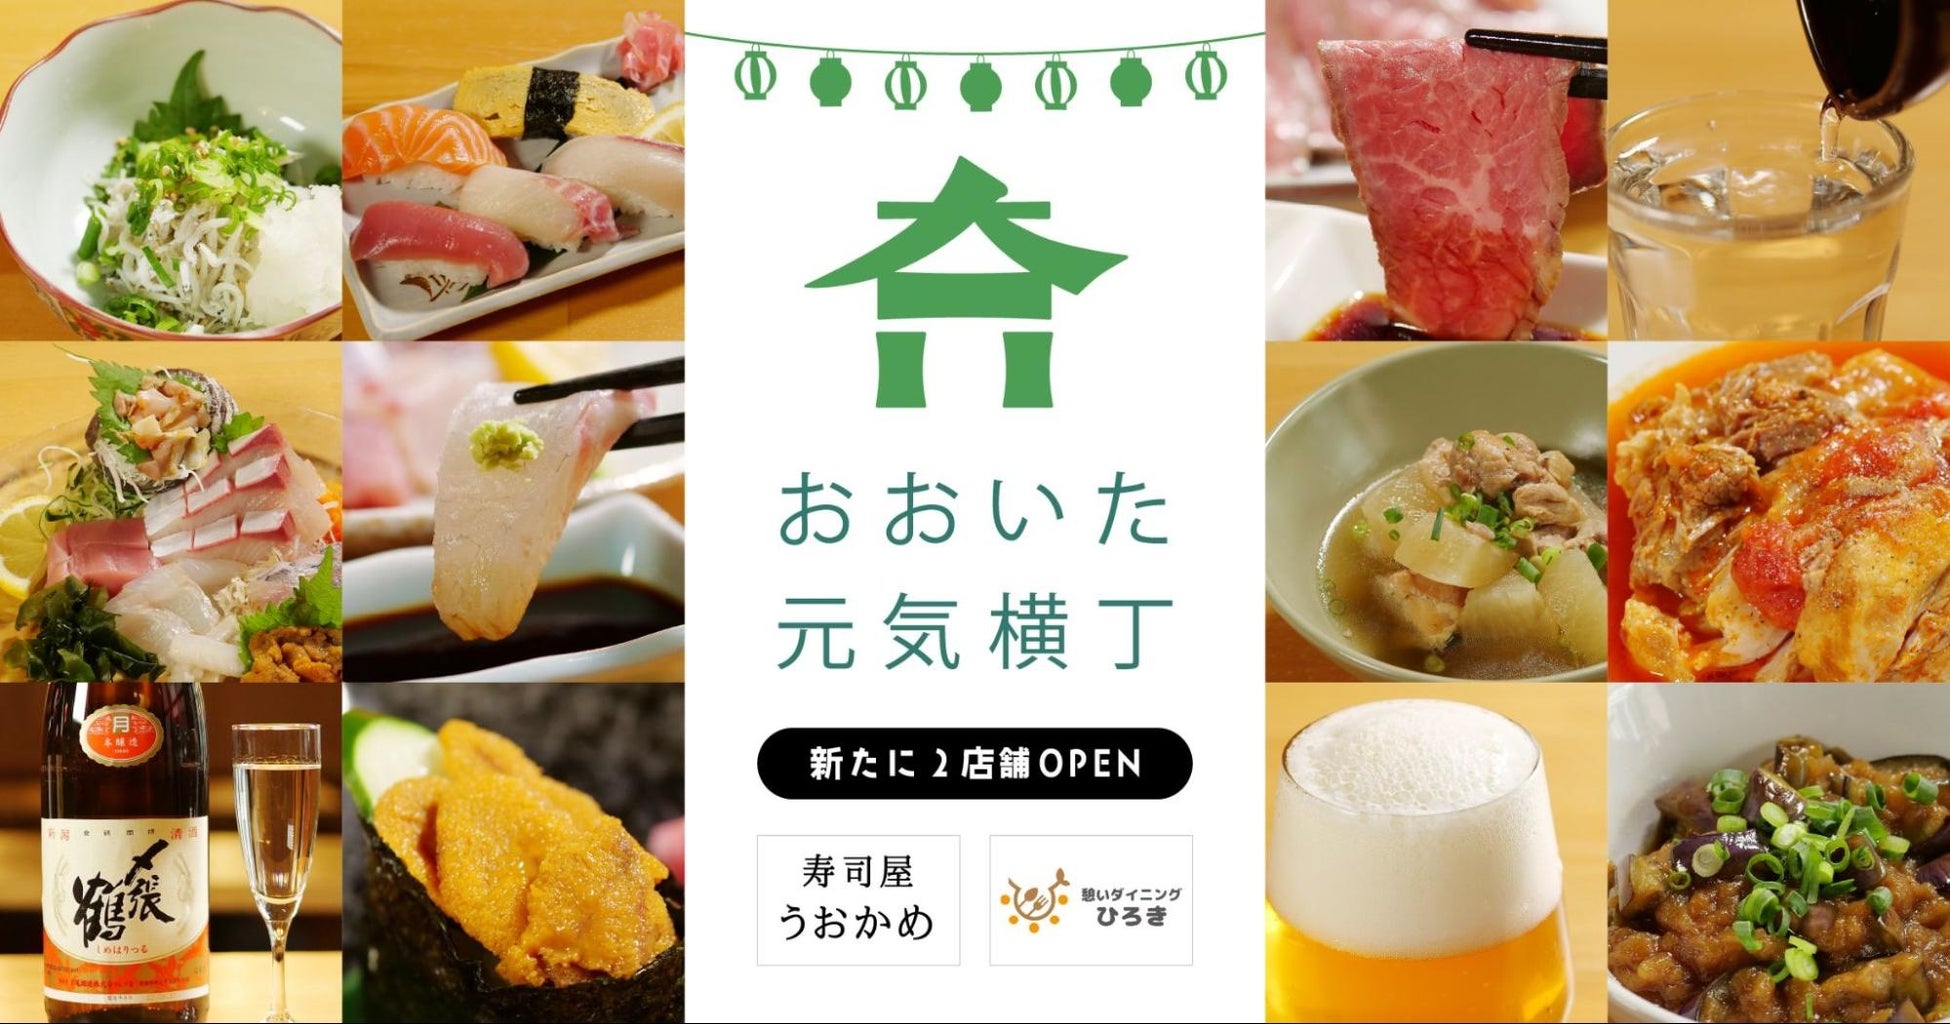 【8/1】『おおいた元気横丁』に新たな2店舗がオープン。地産地消で地域を盛り上げる寿司屋と創作家庭料理屋が入居